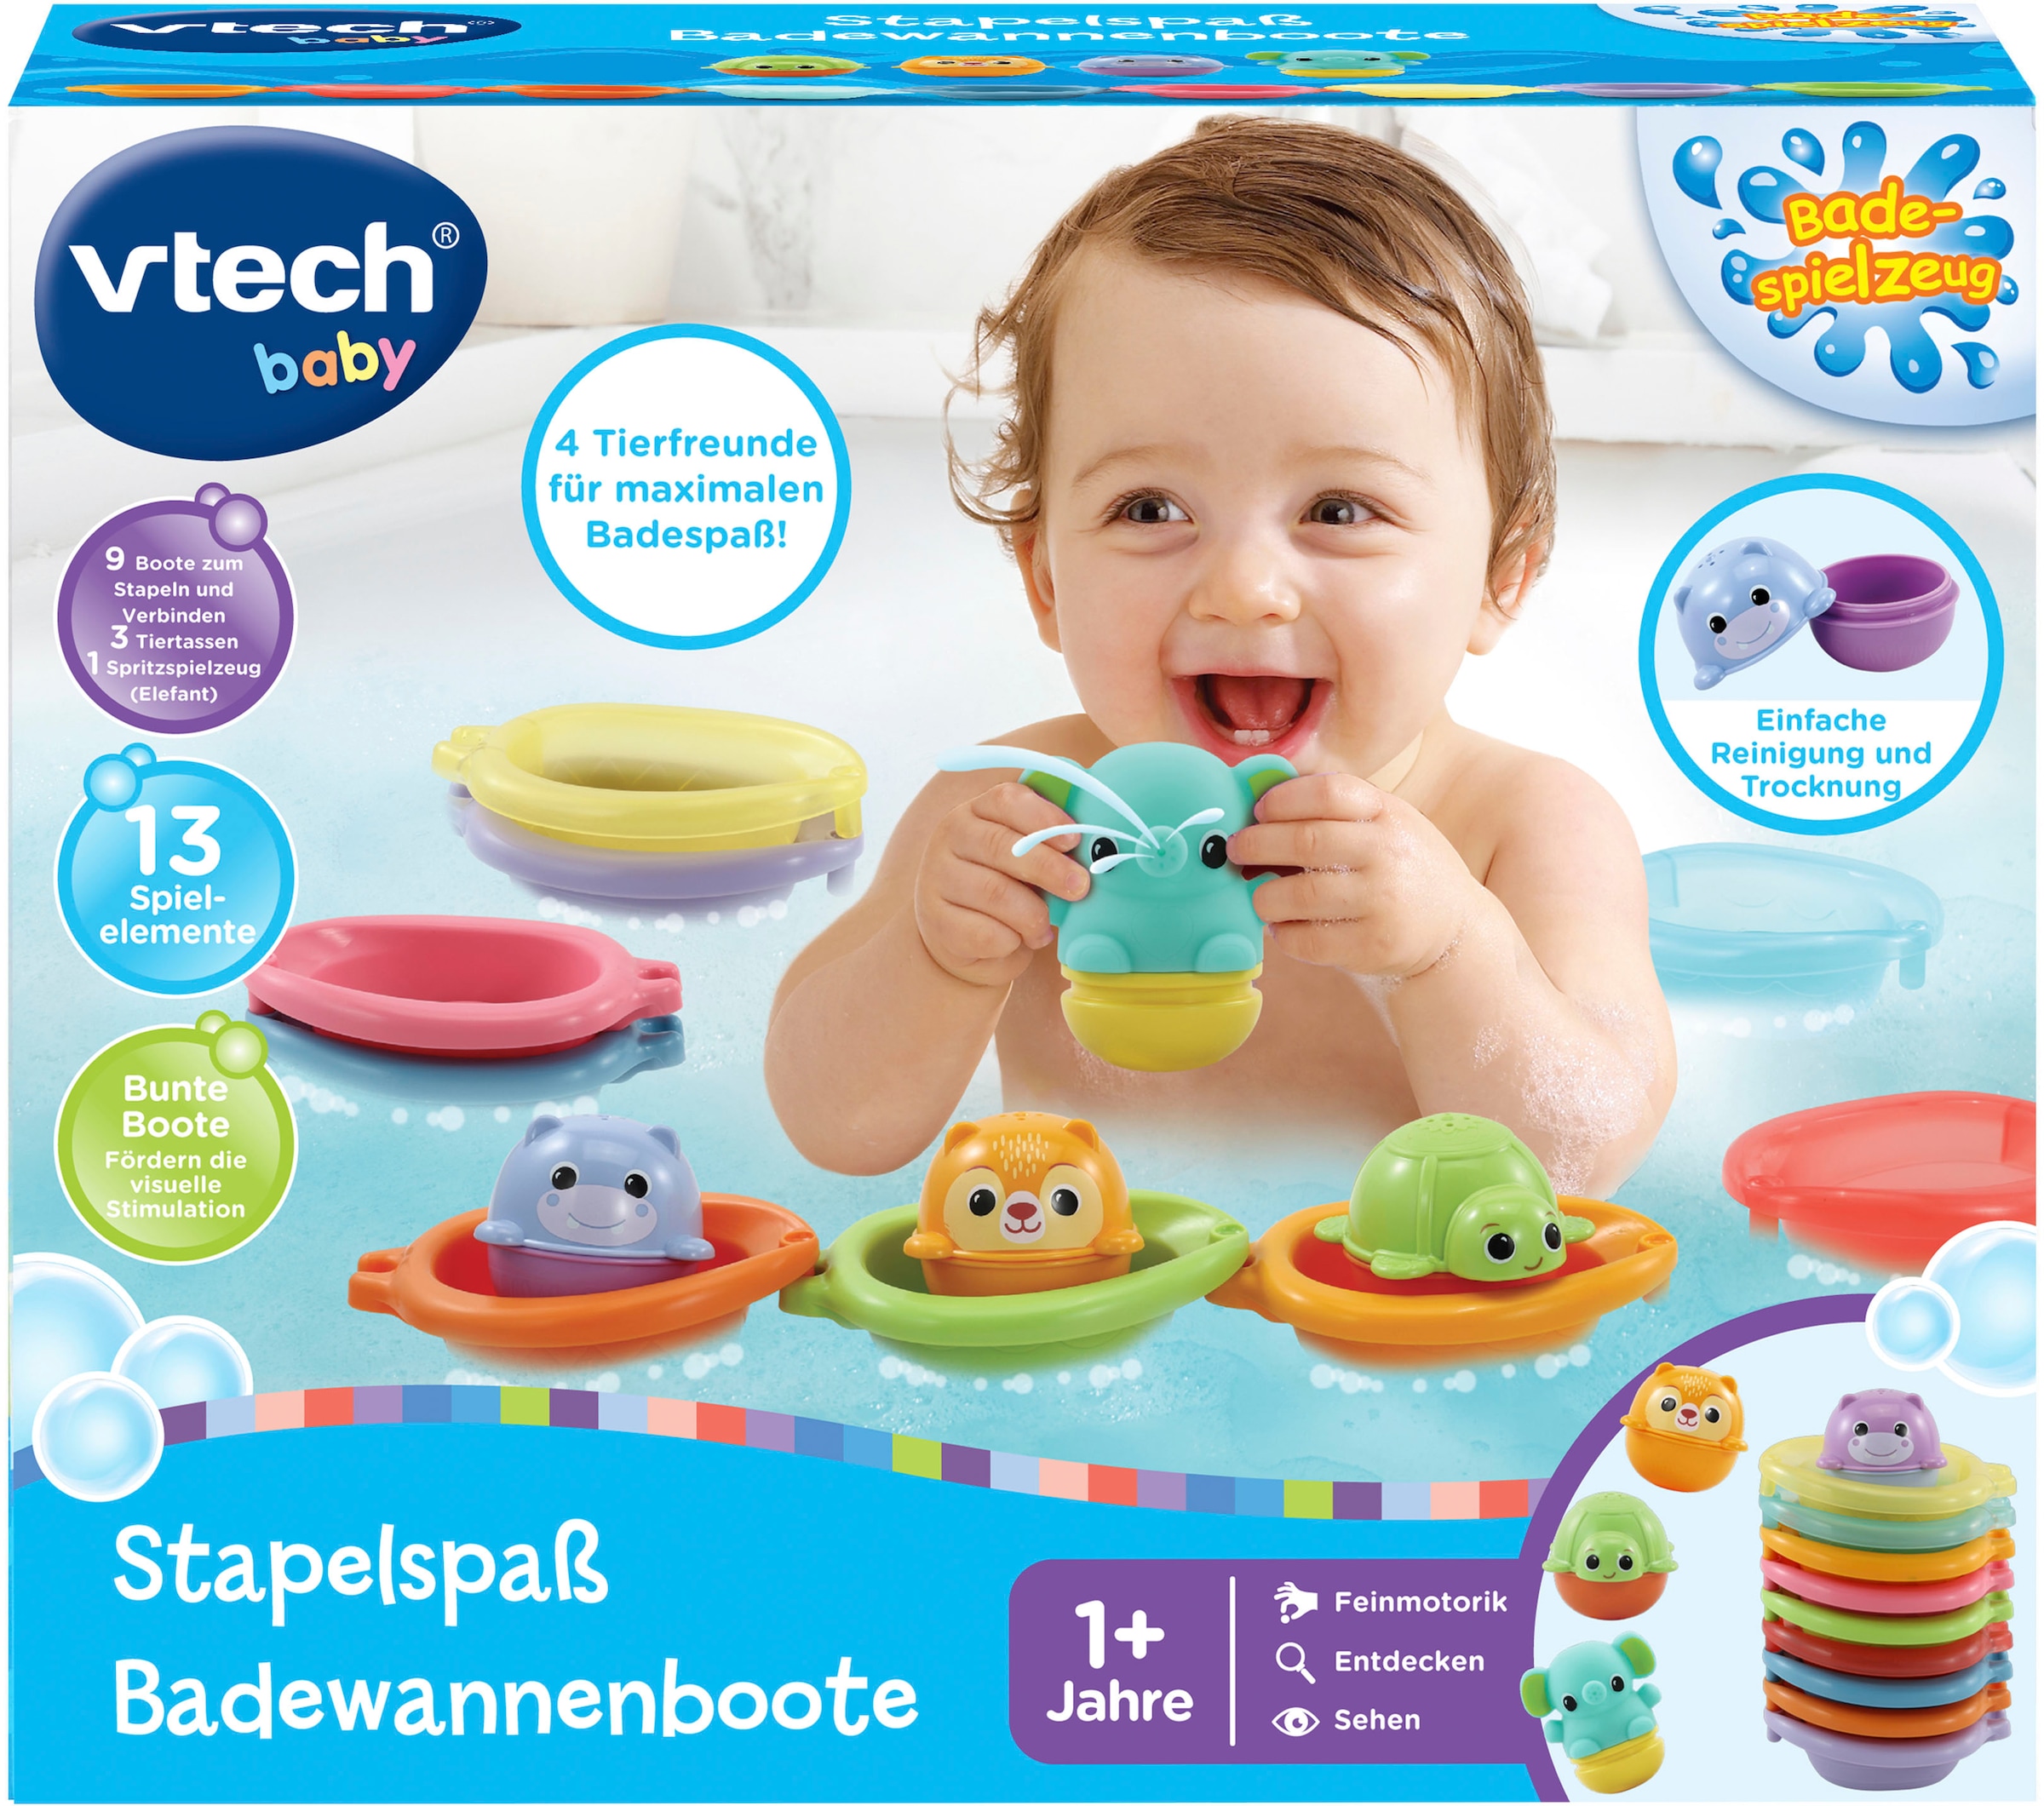 Vtech® Badespielzeug »Vtech Baby, Stapelspaß Badewannenboote«